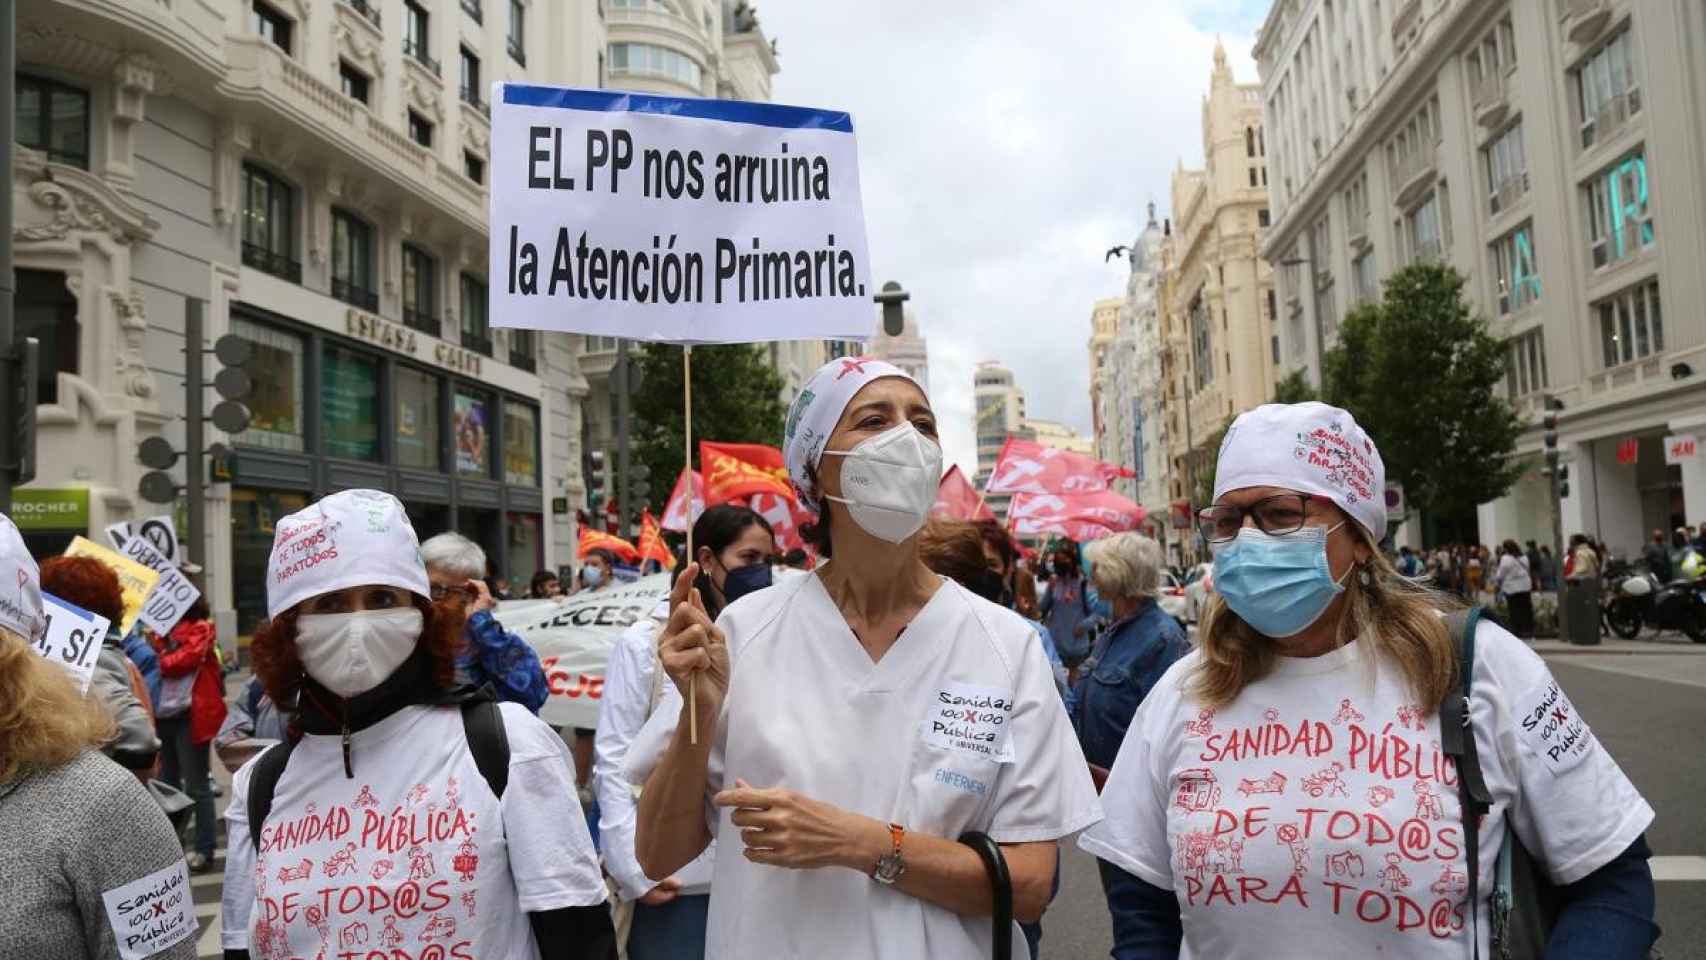 Imagen de una manifestación por la sanidad pública.